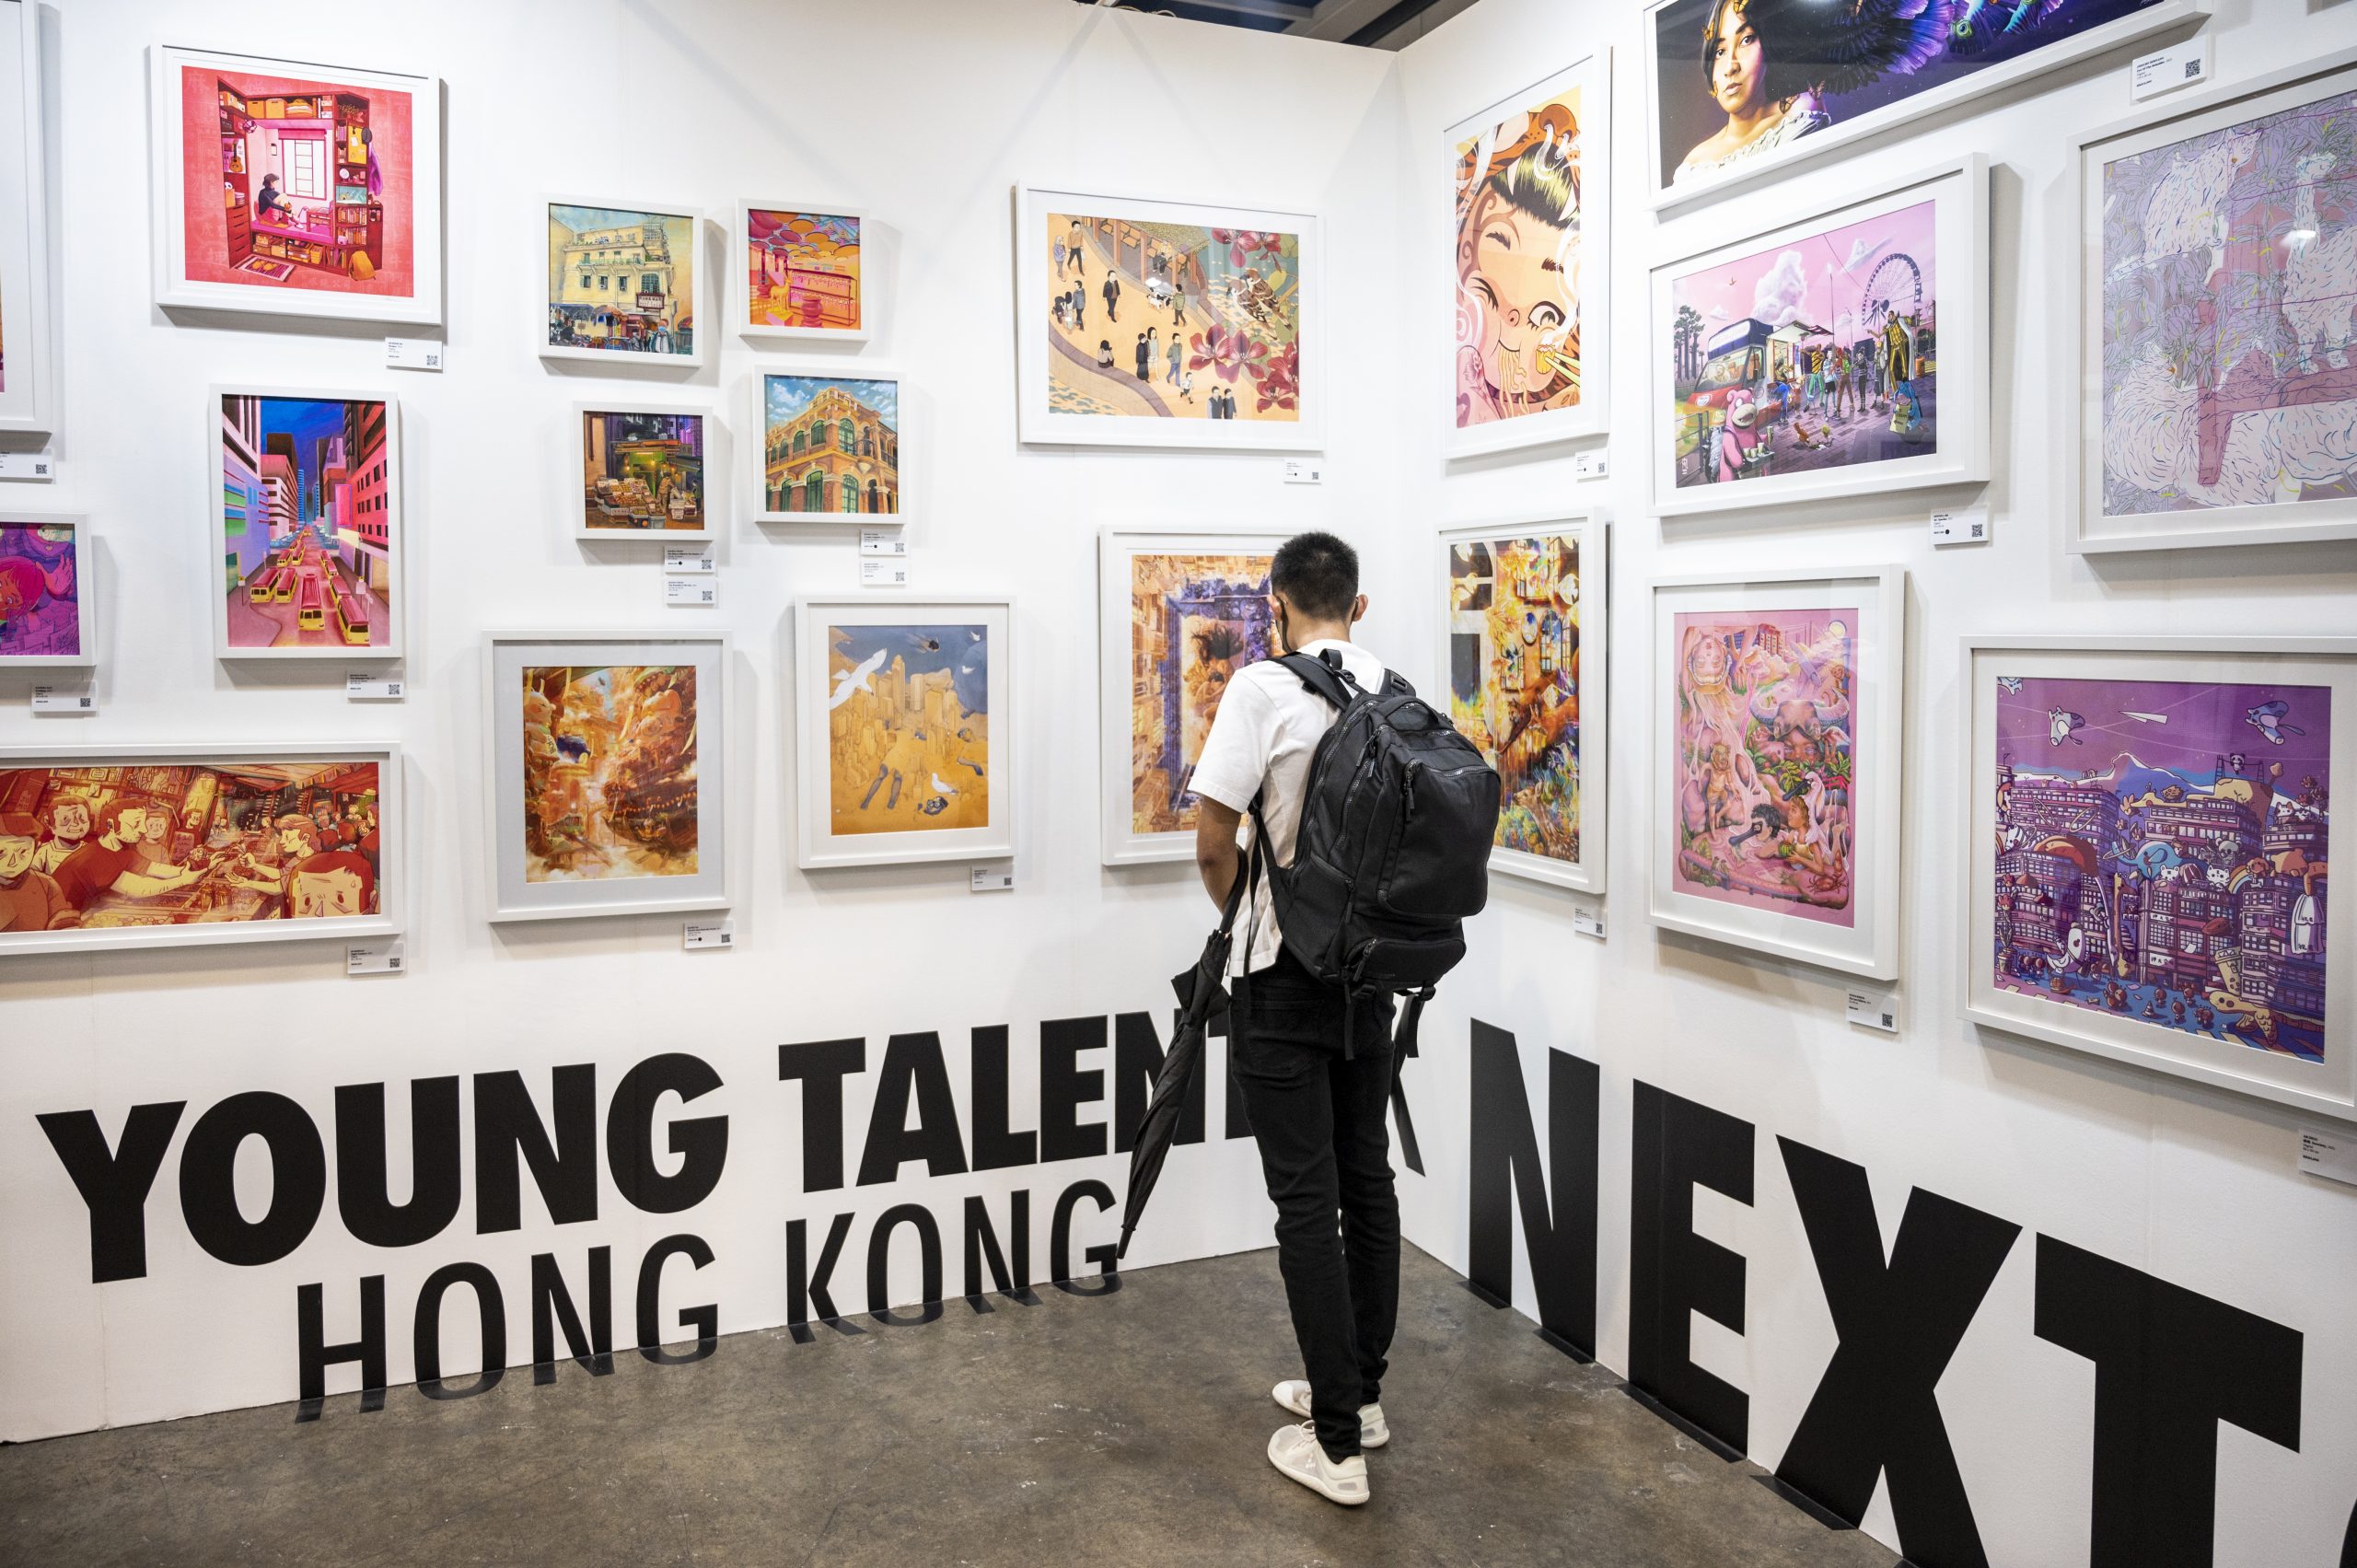 匯聚世界各地與本地新晉藝術家作品丨Affordable Art Fair慶祝進駐香港十周年